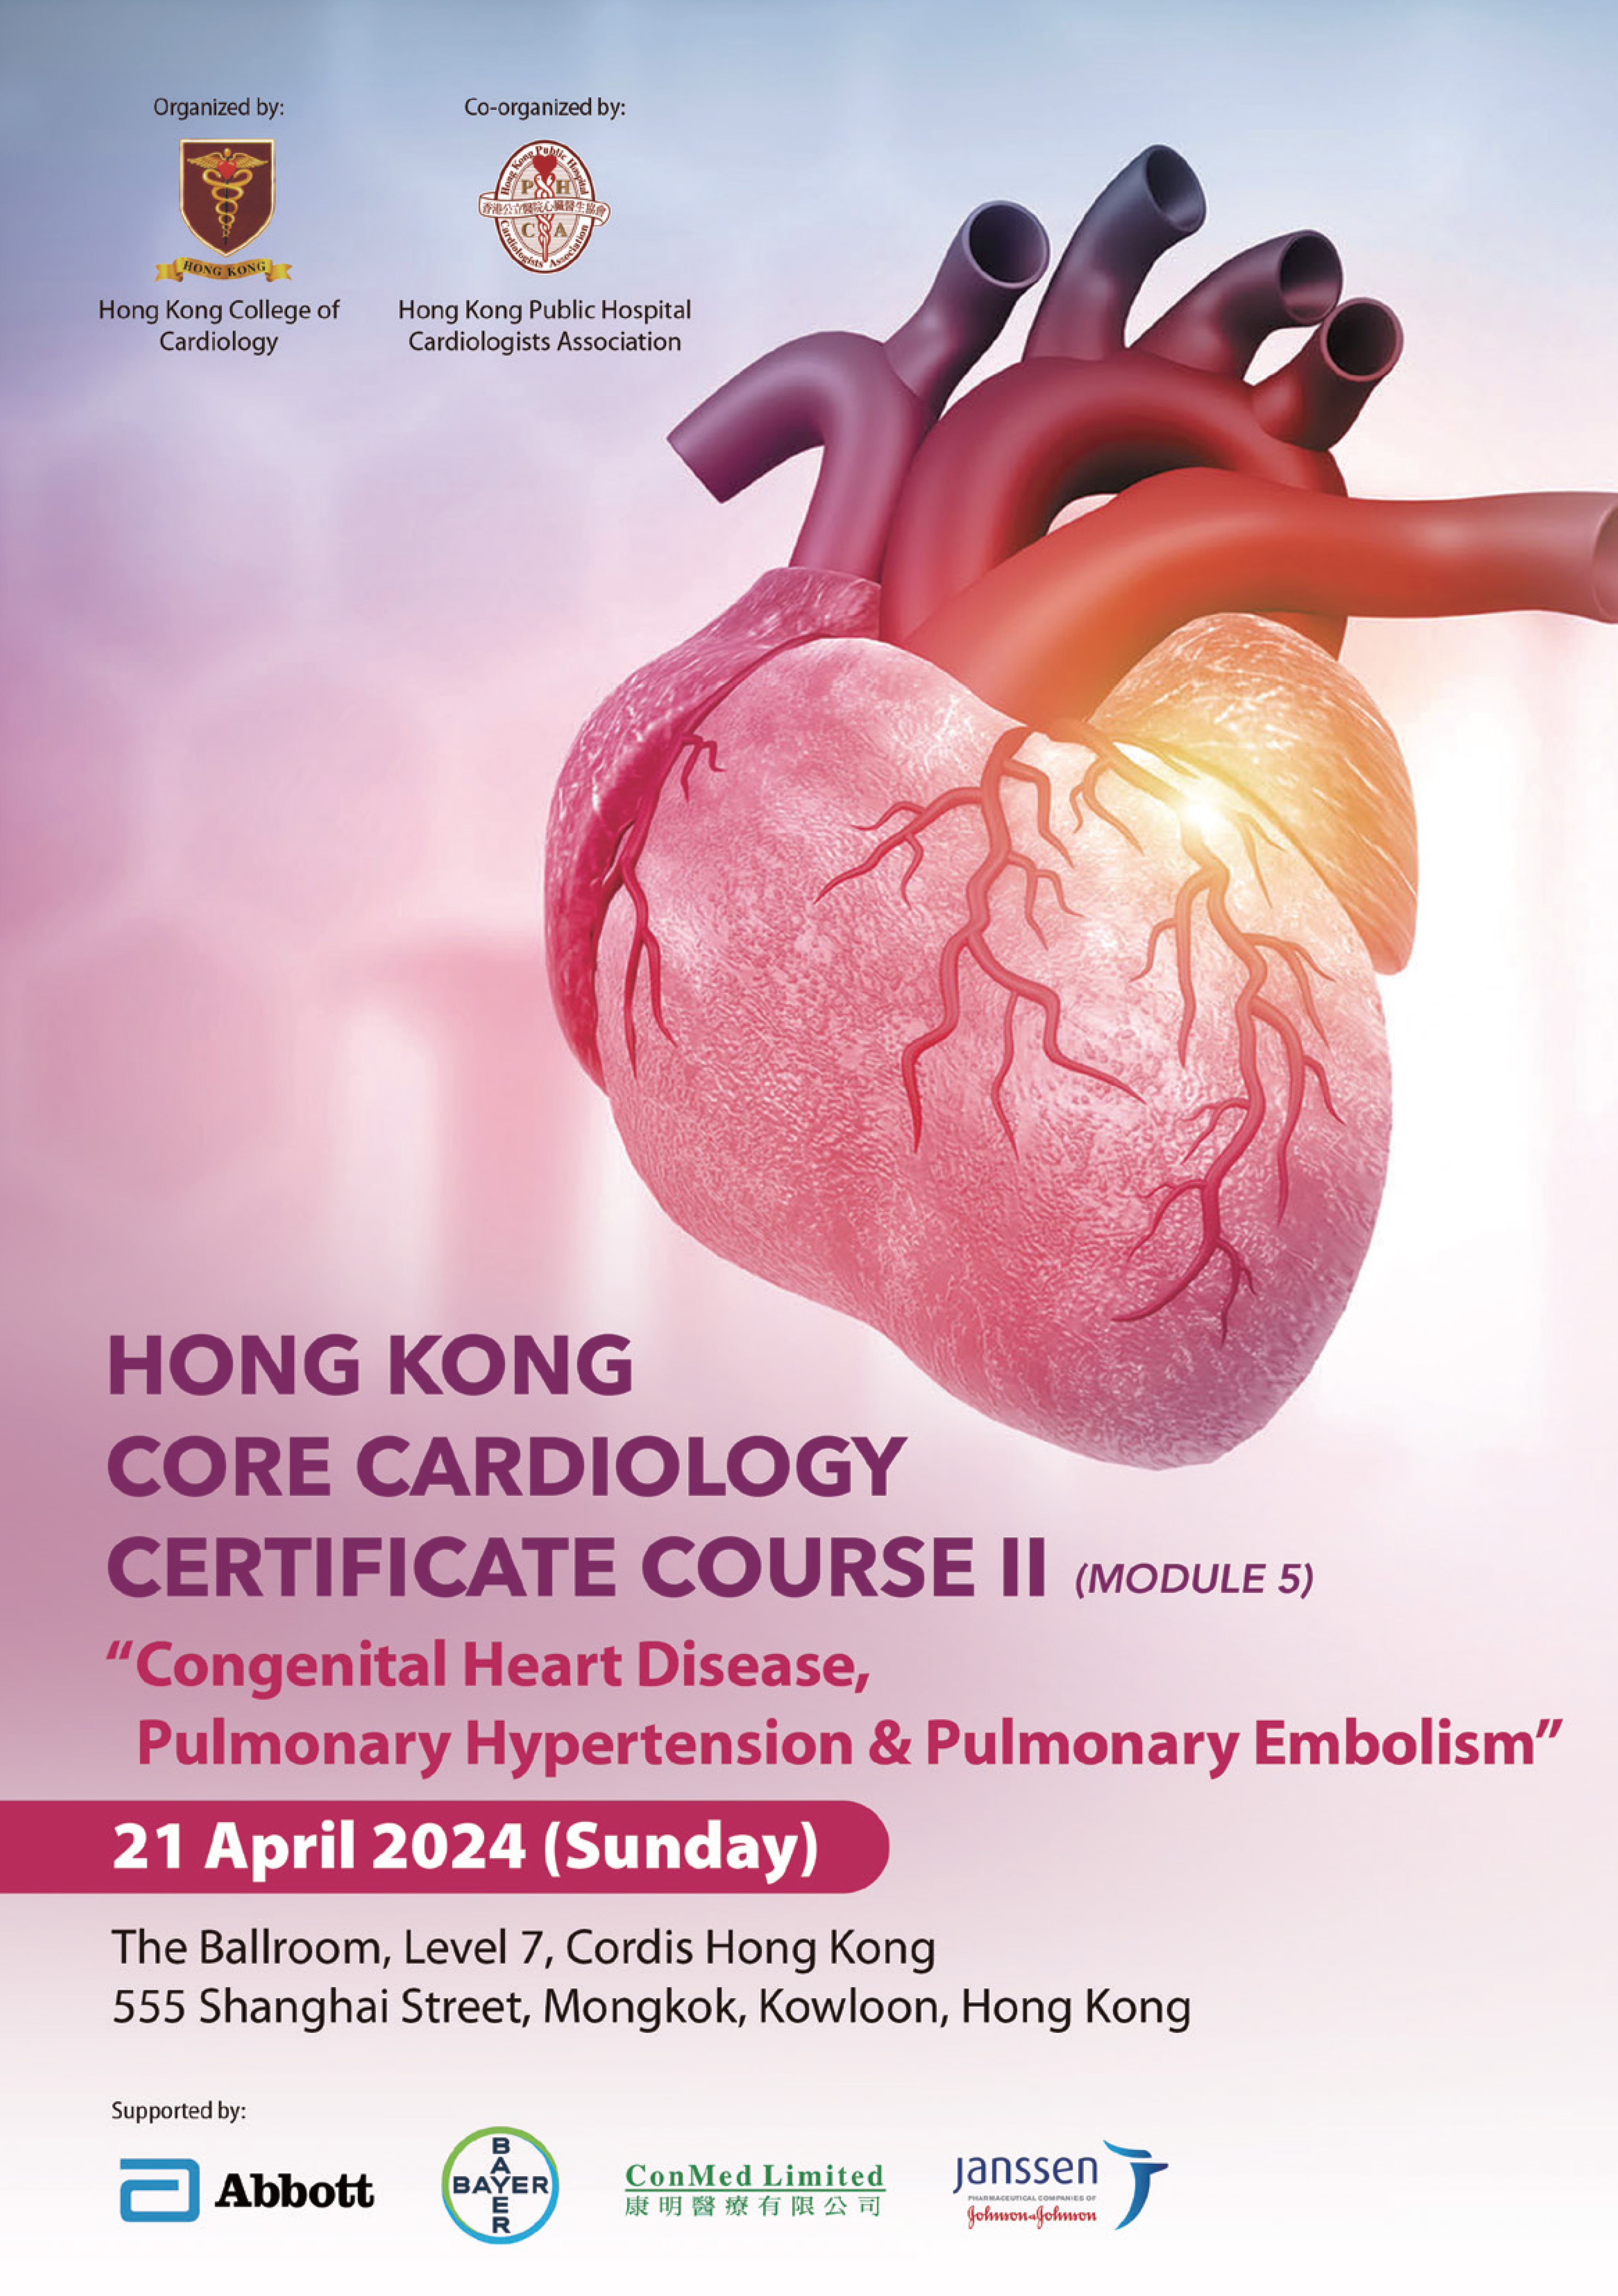 Hong Kong Core Cardiology Certificate Course II (Module 5)